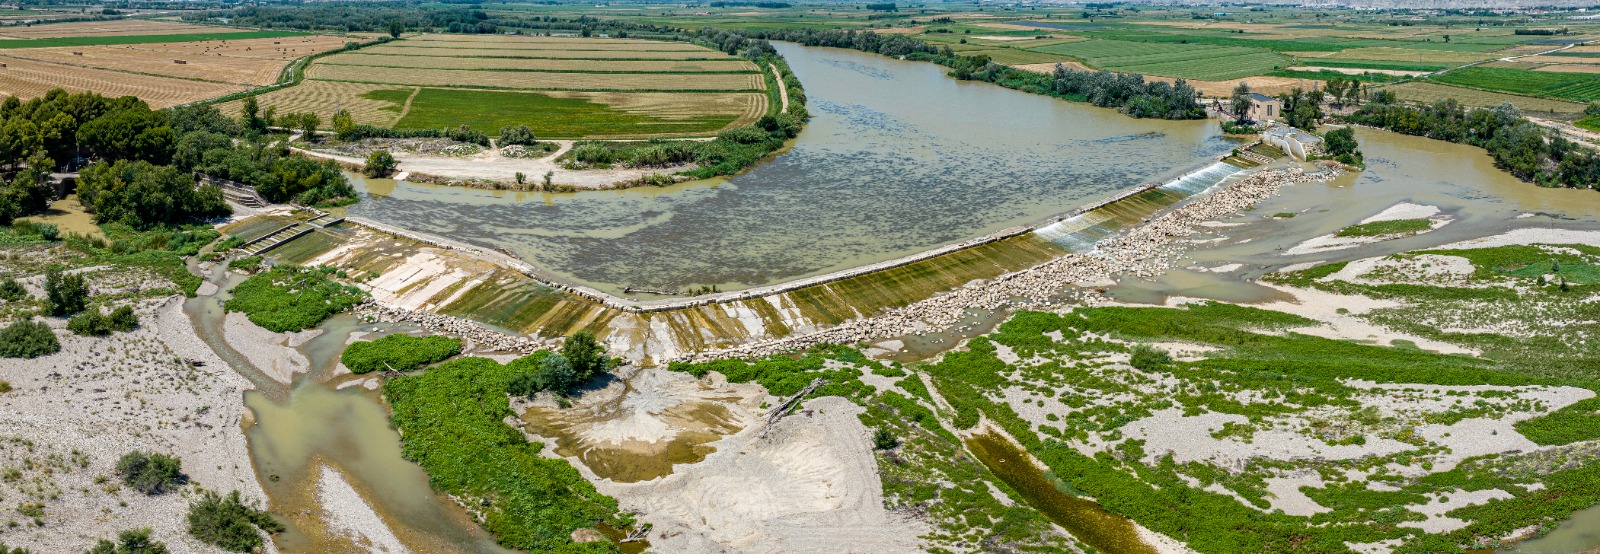 La CHE construye una rampa de peces en la Presa de Pina, entre el Burgo y Nuez de Ebro (Zaragoza)